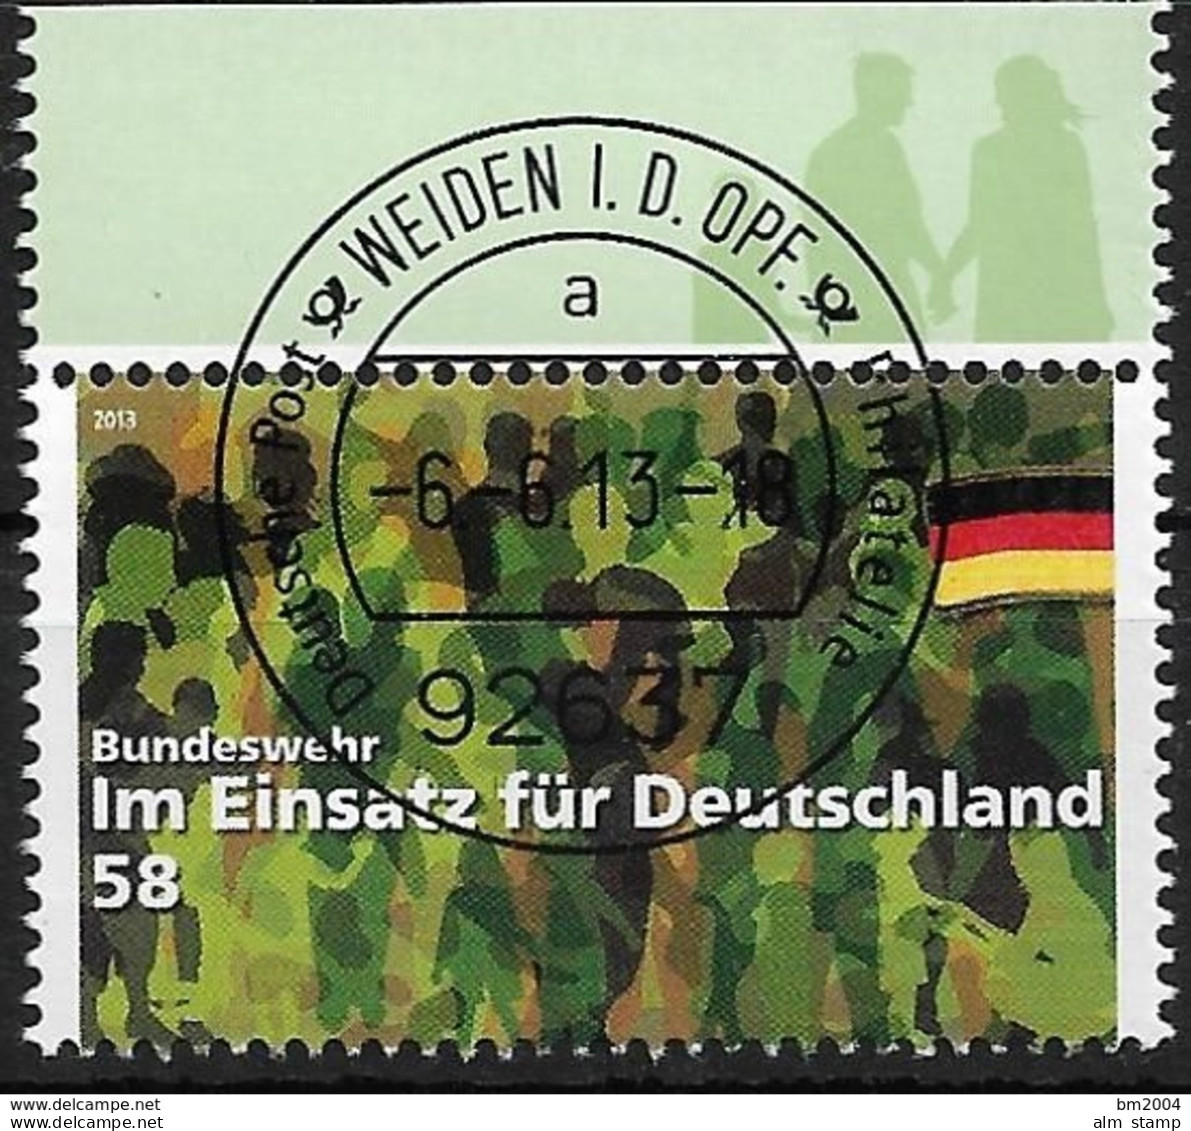 2013 Germany Allem.Fed. Mi. 3015 FD-used Weiden  Im Einsatz Für Deutschland: Bundeswehr - Gebraucht